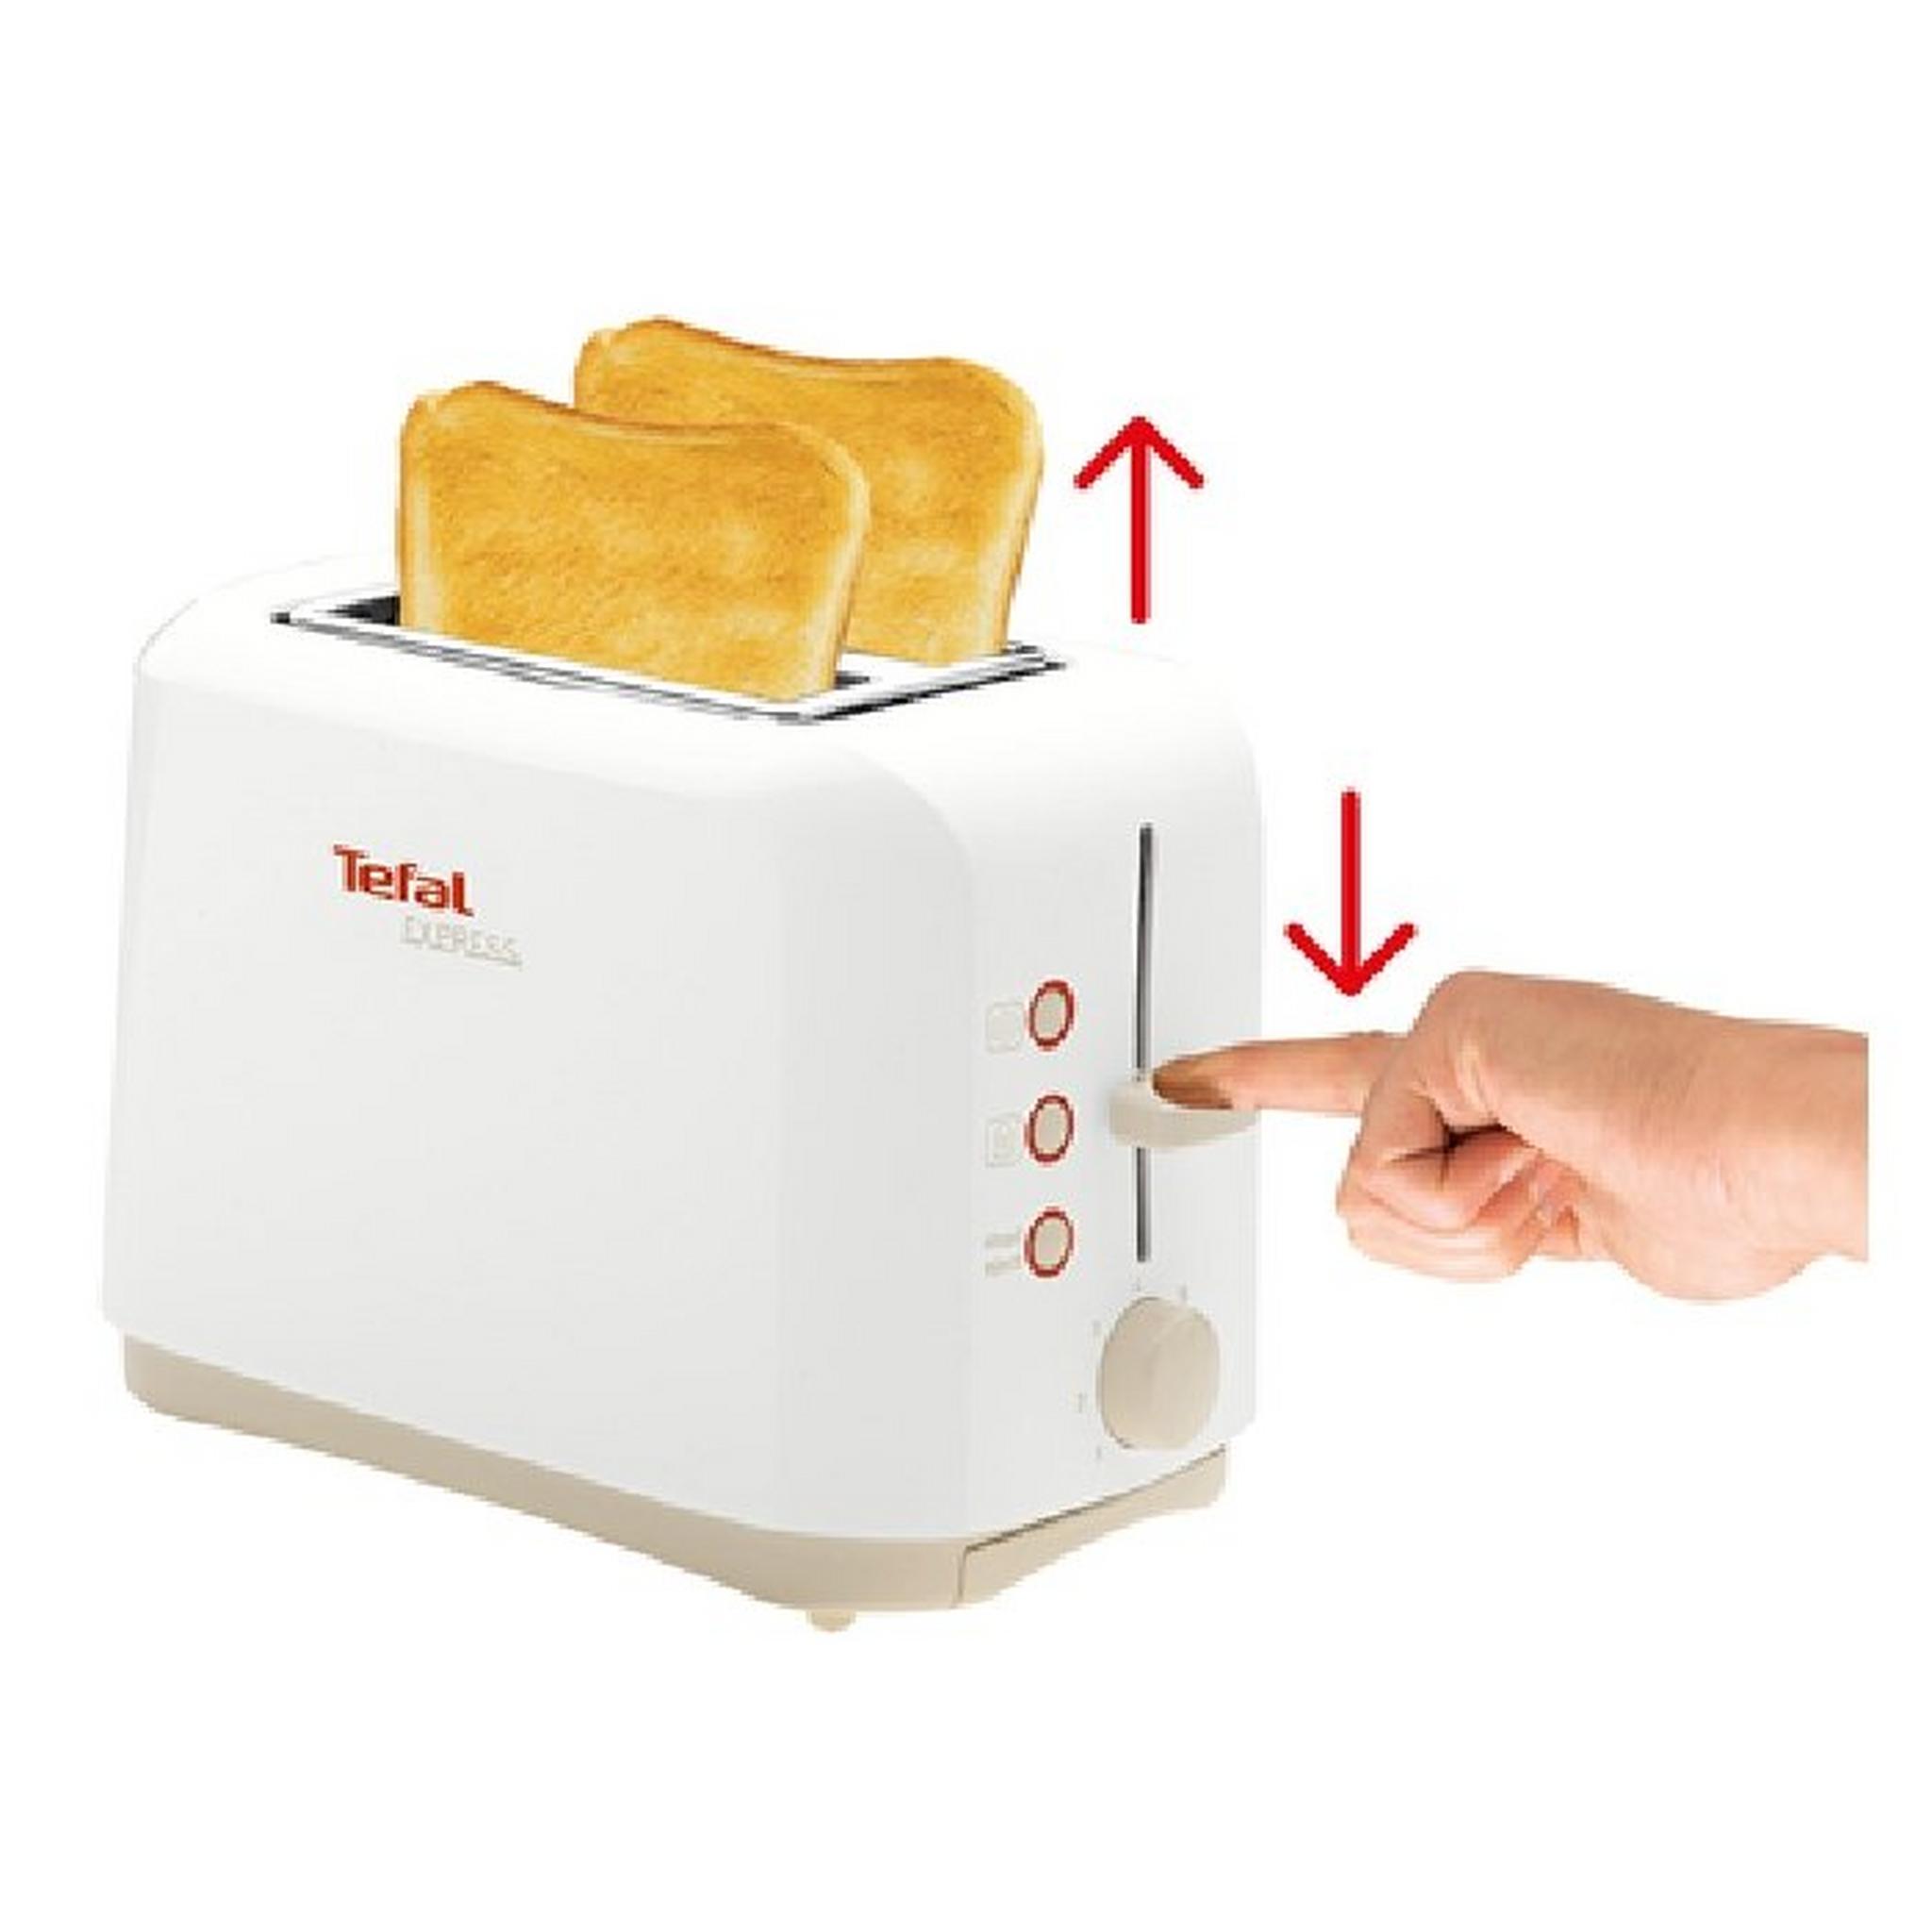 محمصة الخبز الكهربائية اكسبرس ٢ شريحة من تيفال – ٨٥٠ واط – أبيض (TT357170)